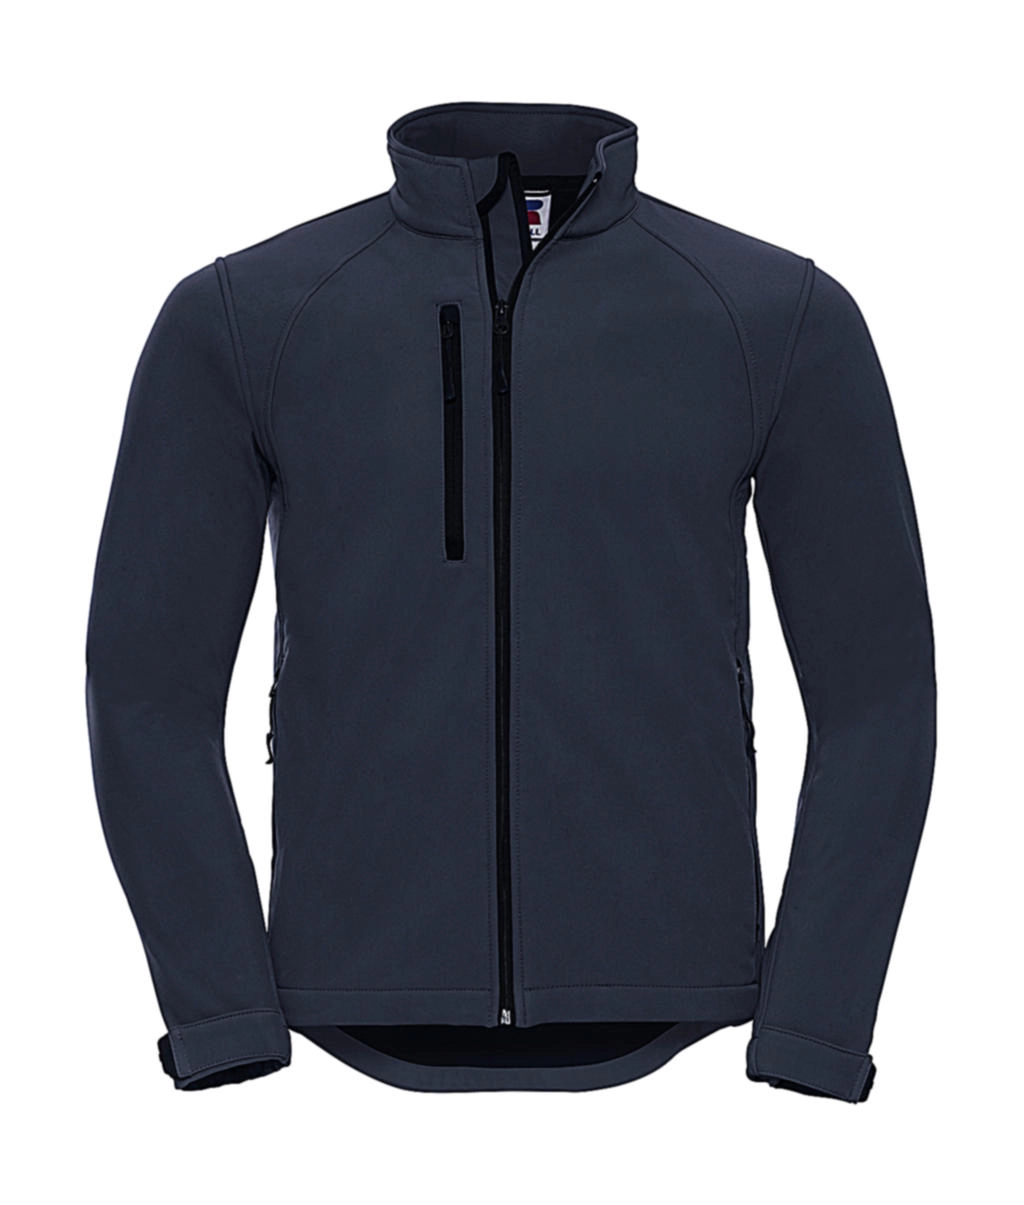 Softshell Jacket zum Besticken und Bedrucken in der Farbe French Navy mit Ihren Logo, Schriftzug oder Motiv.